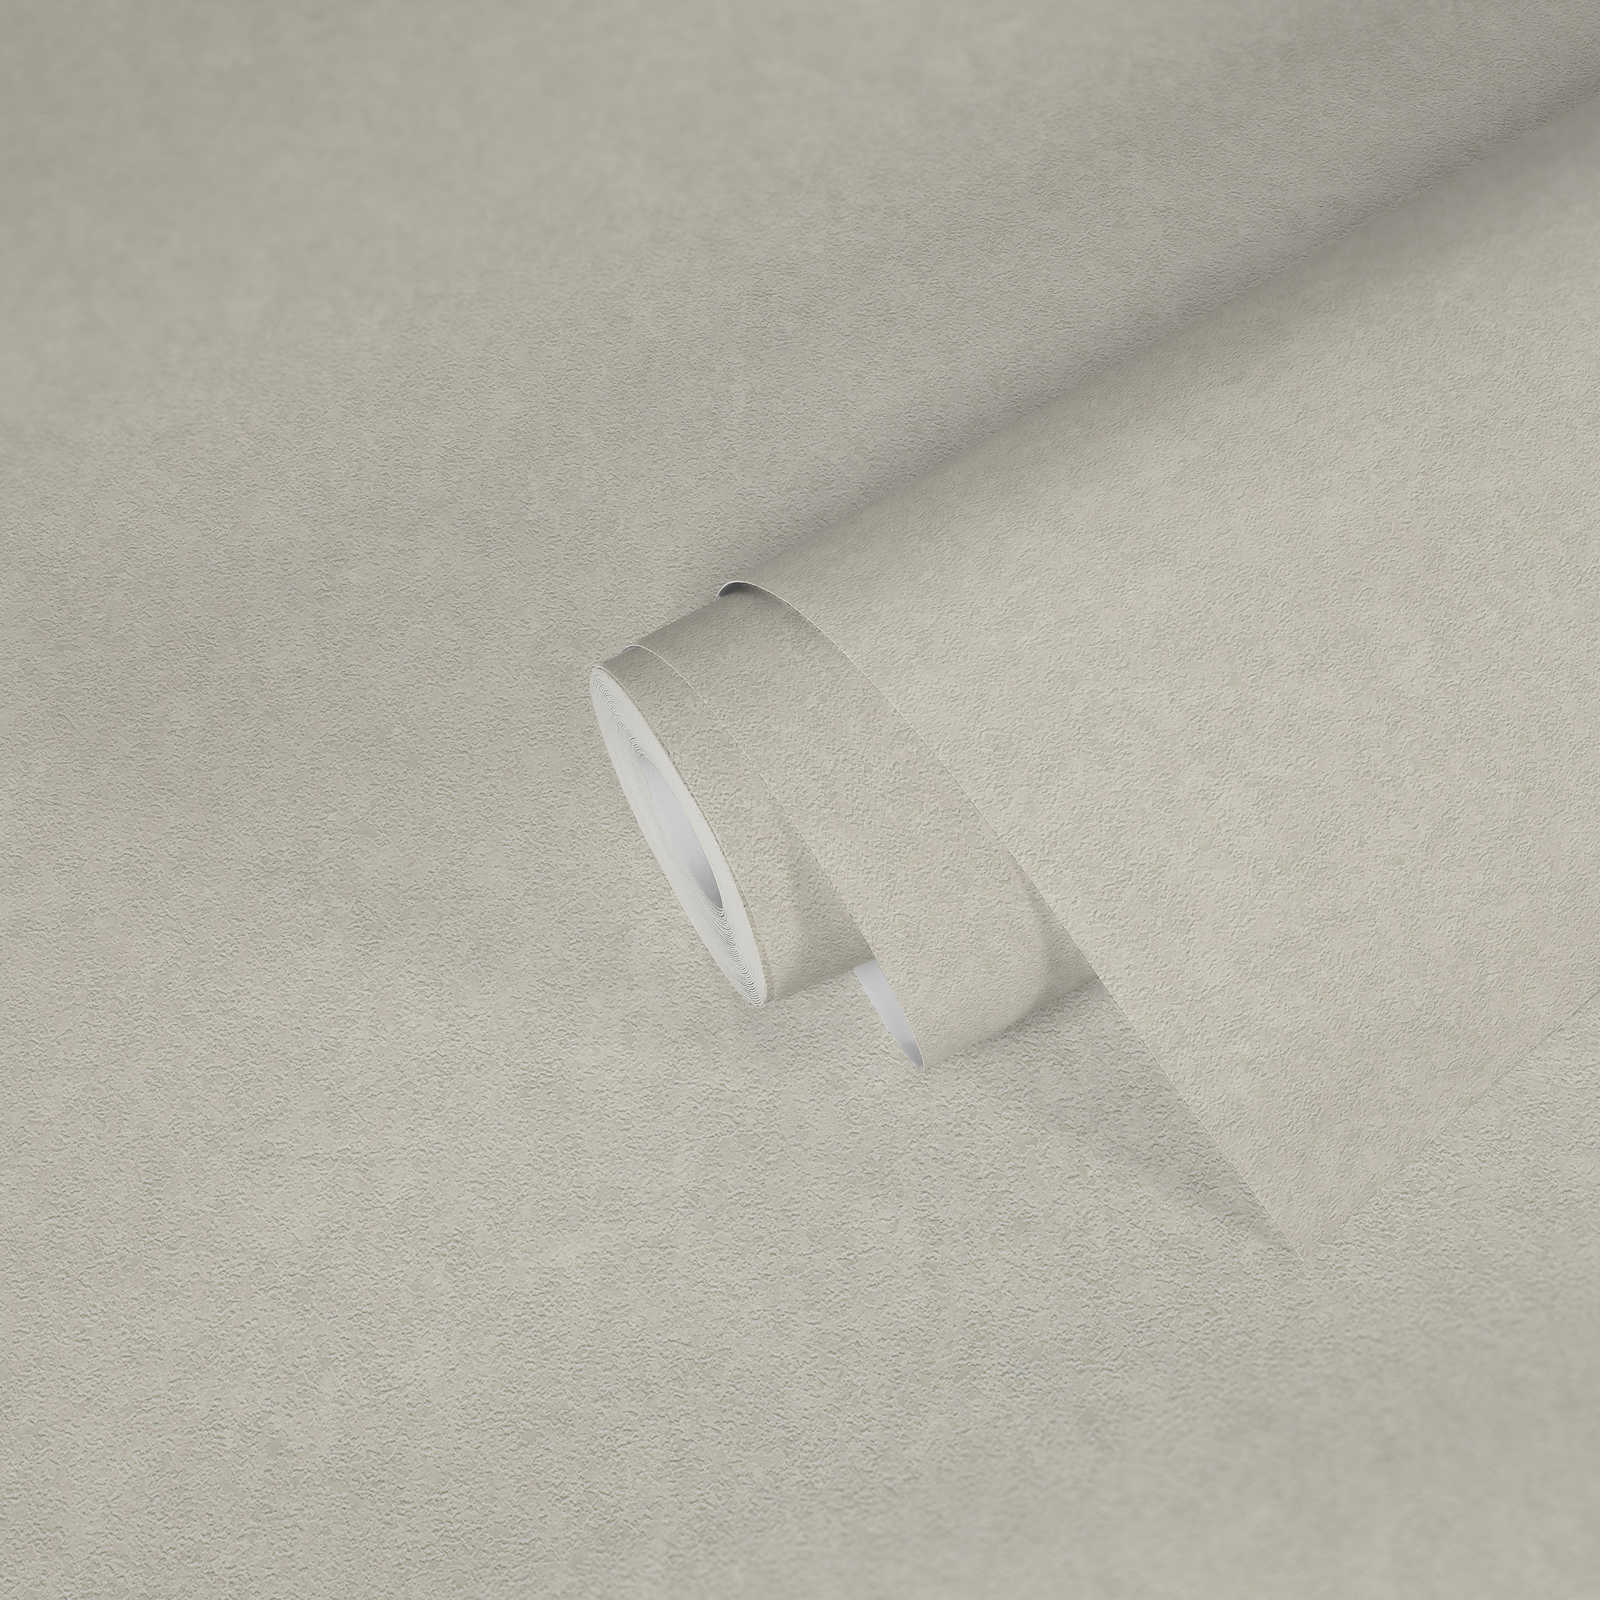             Papier peint uni crème VERSACE avec structure fine - crème
        